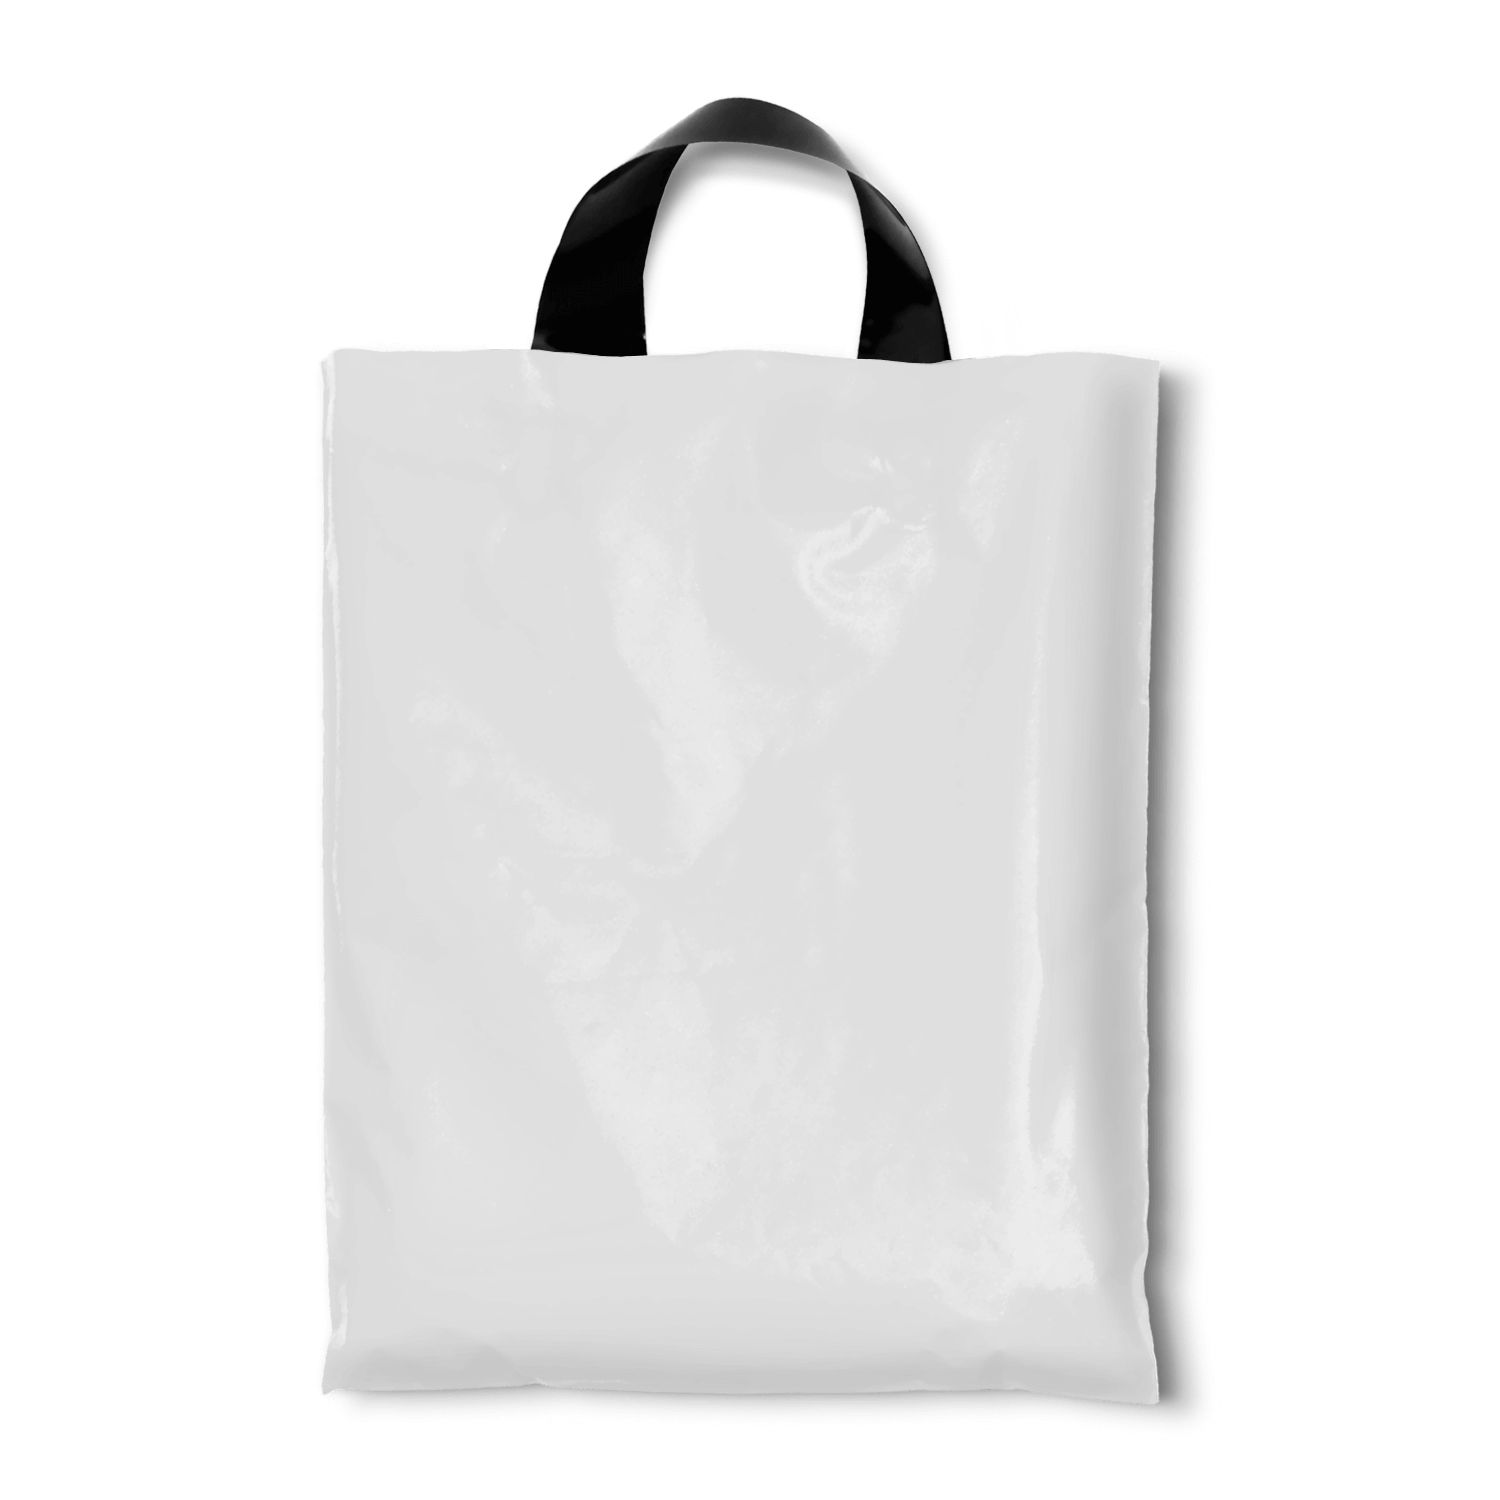 Aggregate 80+ plastic bag design online - in.cdgdbentre